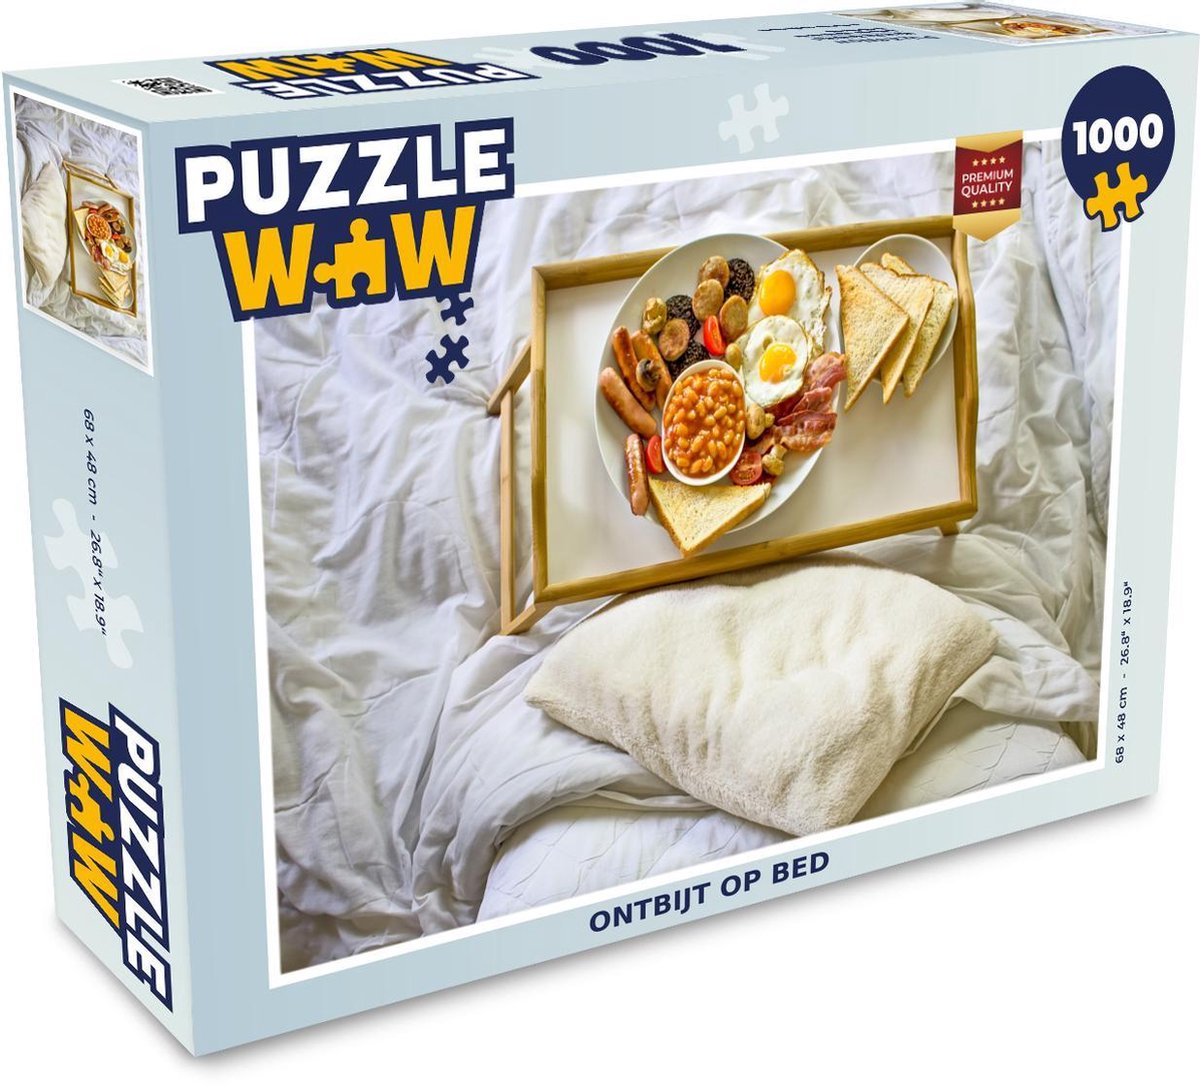 Afbeelding van product Puzzel 1000 stukjes volwassenen Ontbijt 1000 stukjes - Ontbijt op bed - PuzzleWow heeft +100000 puzzels